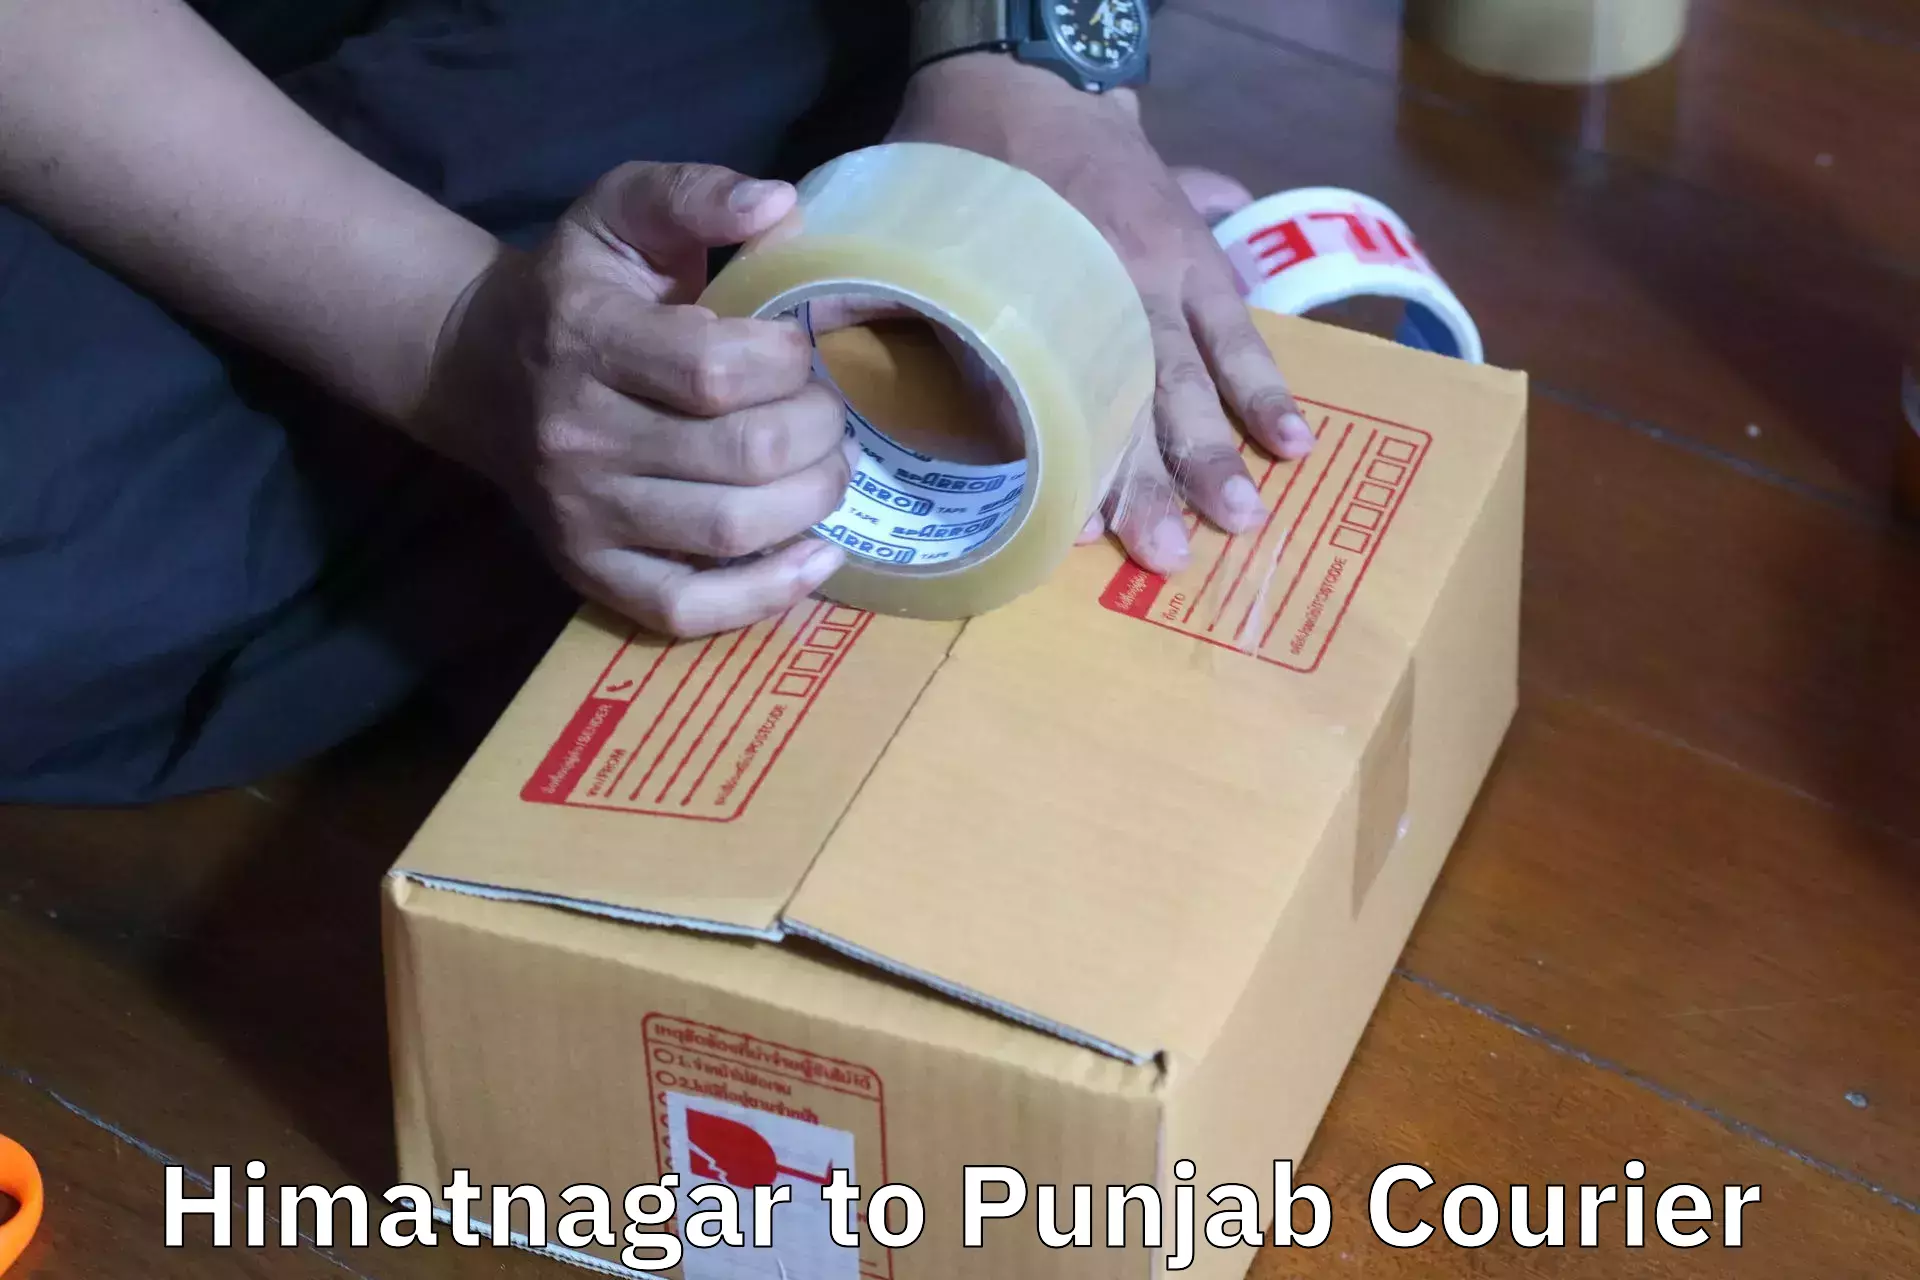 Budget-friendly movers Himatnagar to Nangal